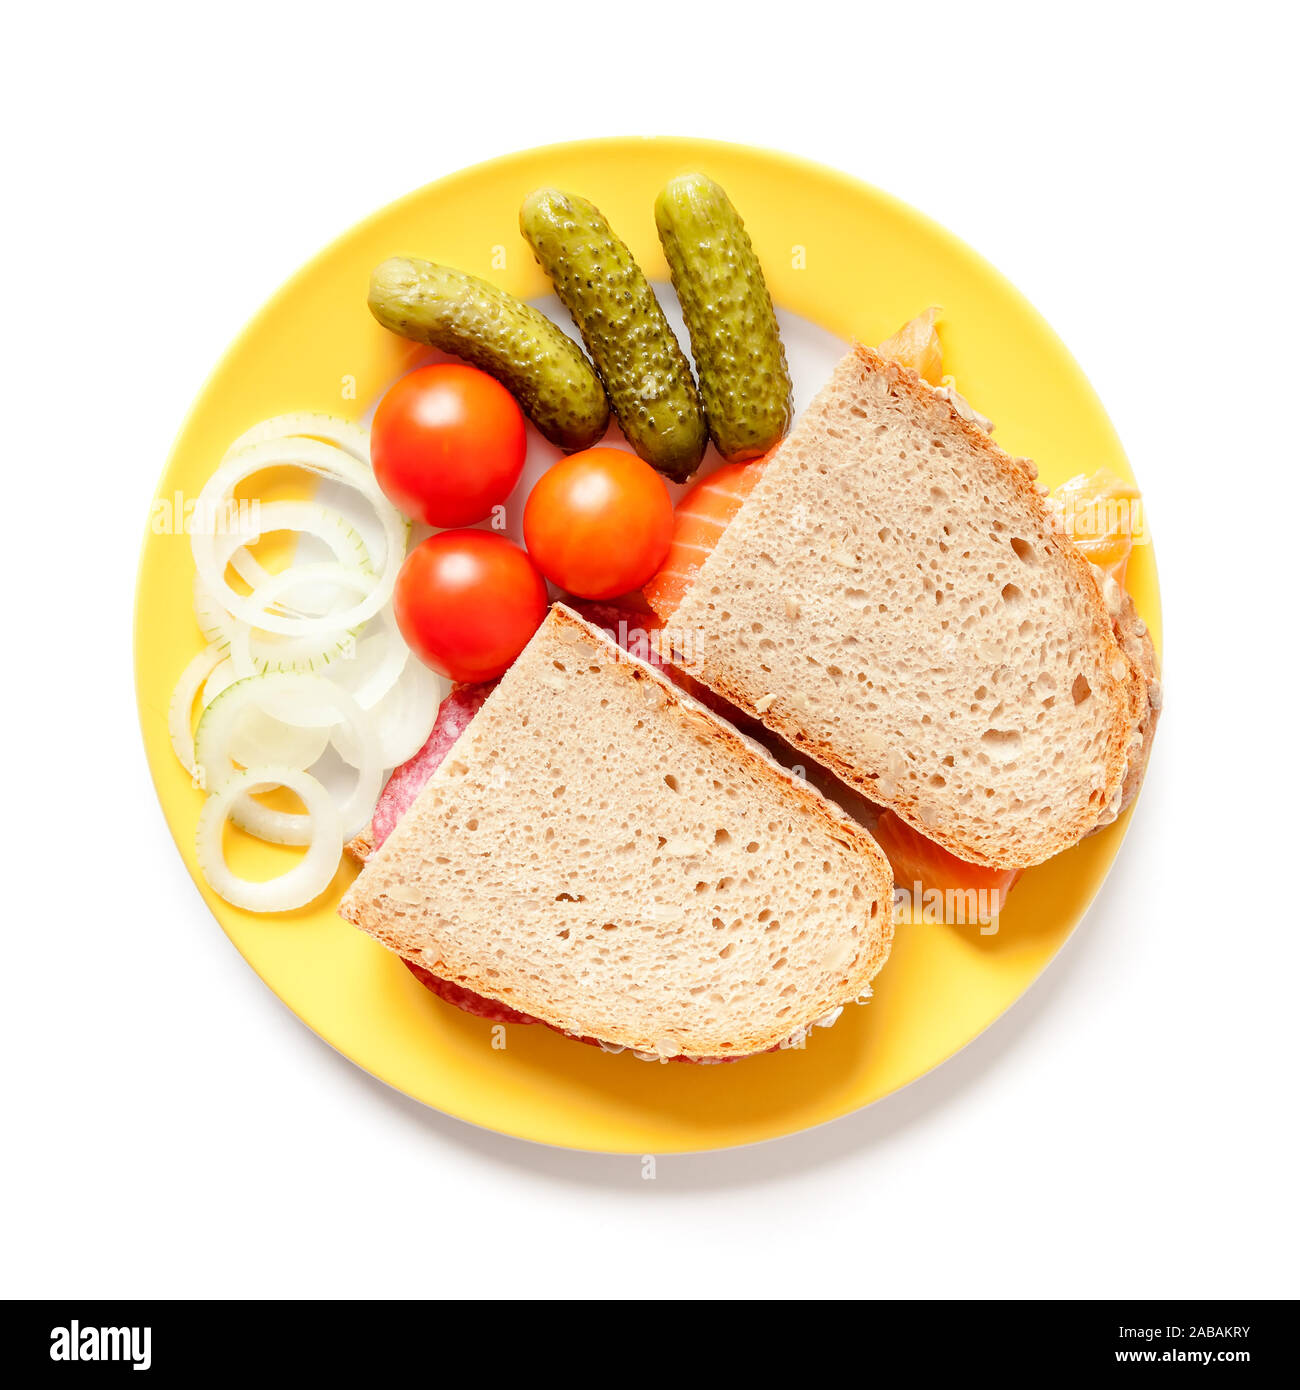 Ein Brot mit Salami und Lachs Foto Stock